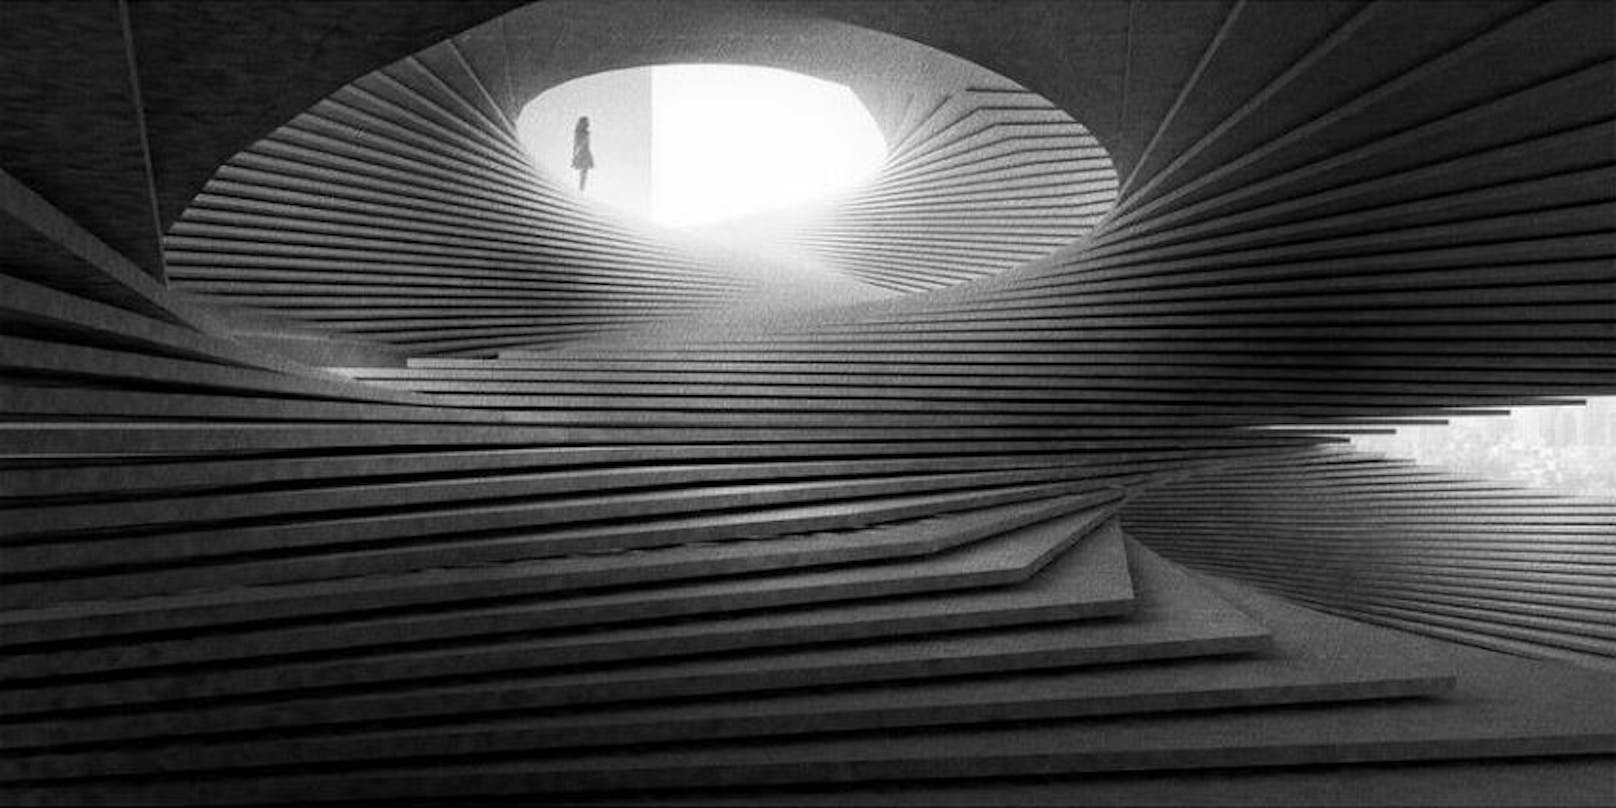 Laut dem Kulturjournalist&nbsp;Axel Brüggemanns gleicht die Treppe einer Studie des&nbsp;US-Architekten Khoa Vu.